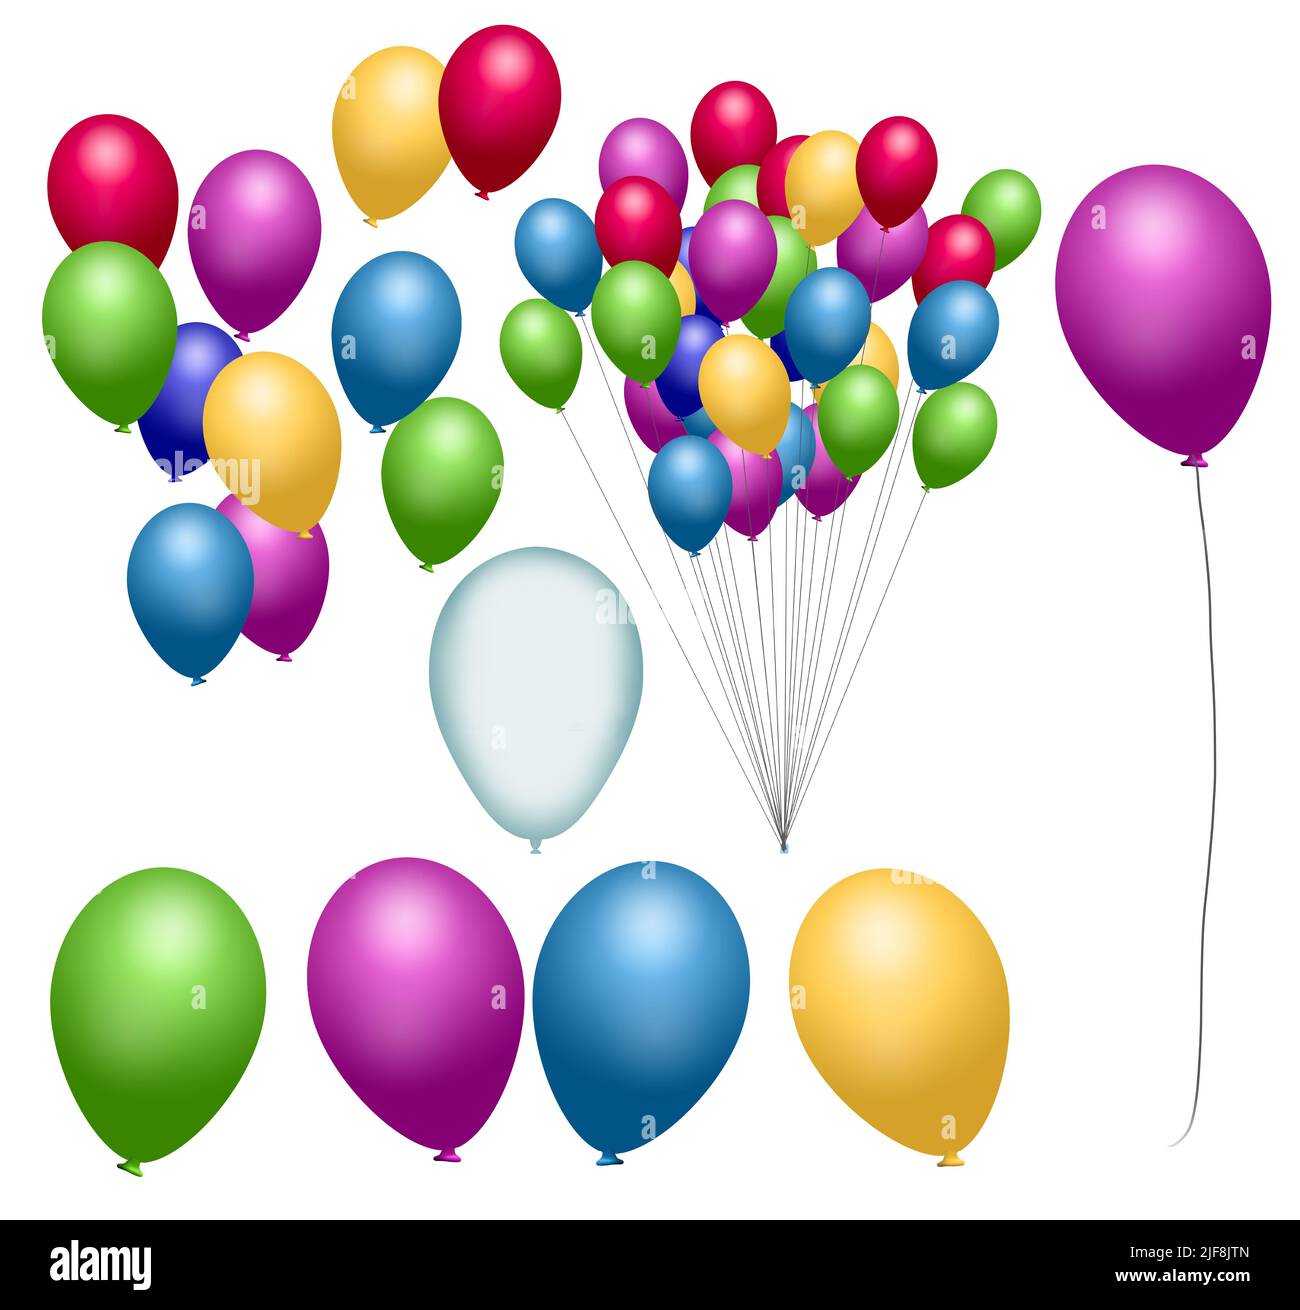 Palloncini di elio, palloncini giocattolo, sono isolati su uno sfondo bianco in un'illustrazione di 3-d da utilizzare come risorsa grafica. Foto Stock